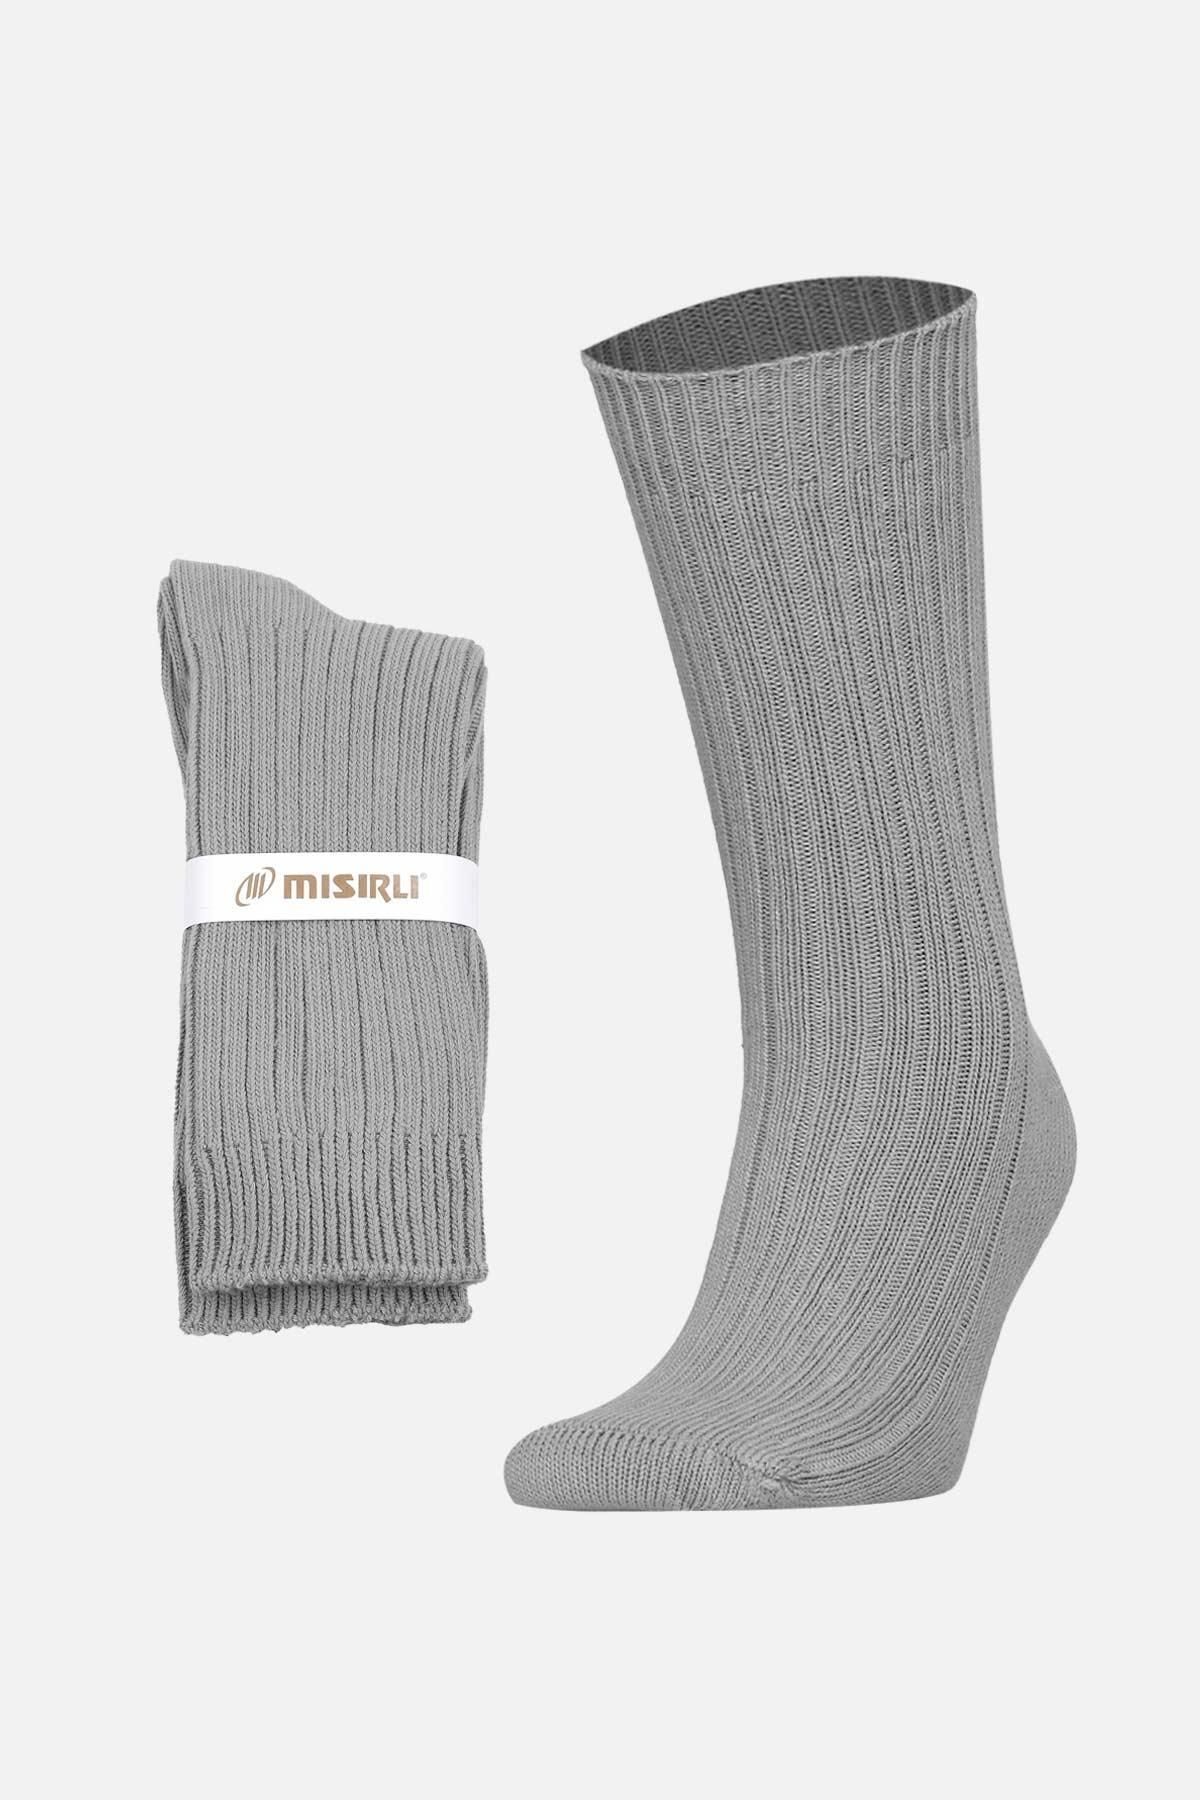 Mısırlı Unisex Pamuklu Bio Cotton Kışlık Gri Soket Çorap   M 3092A G